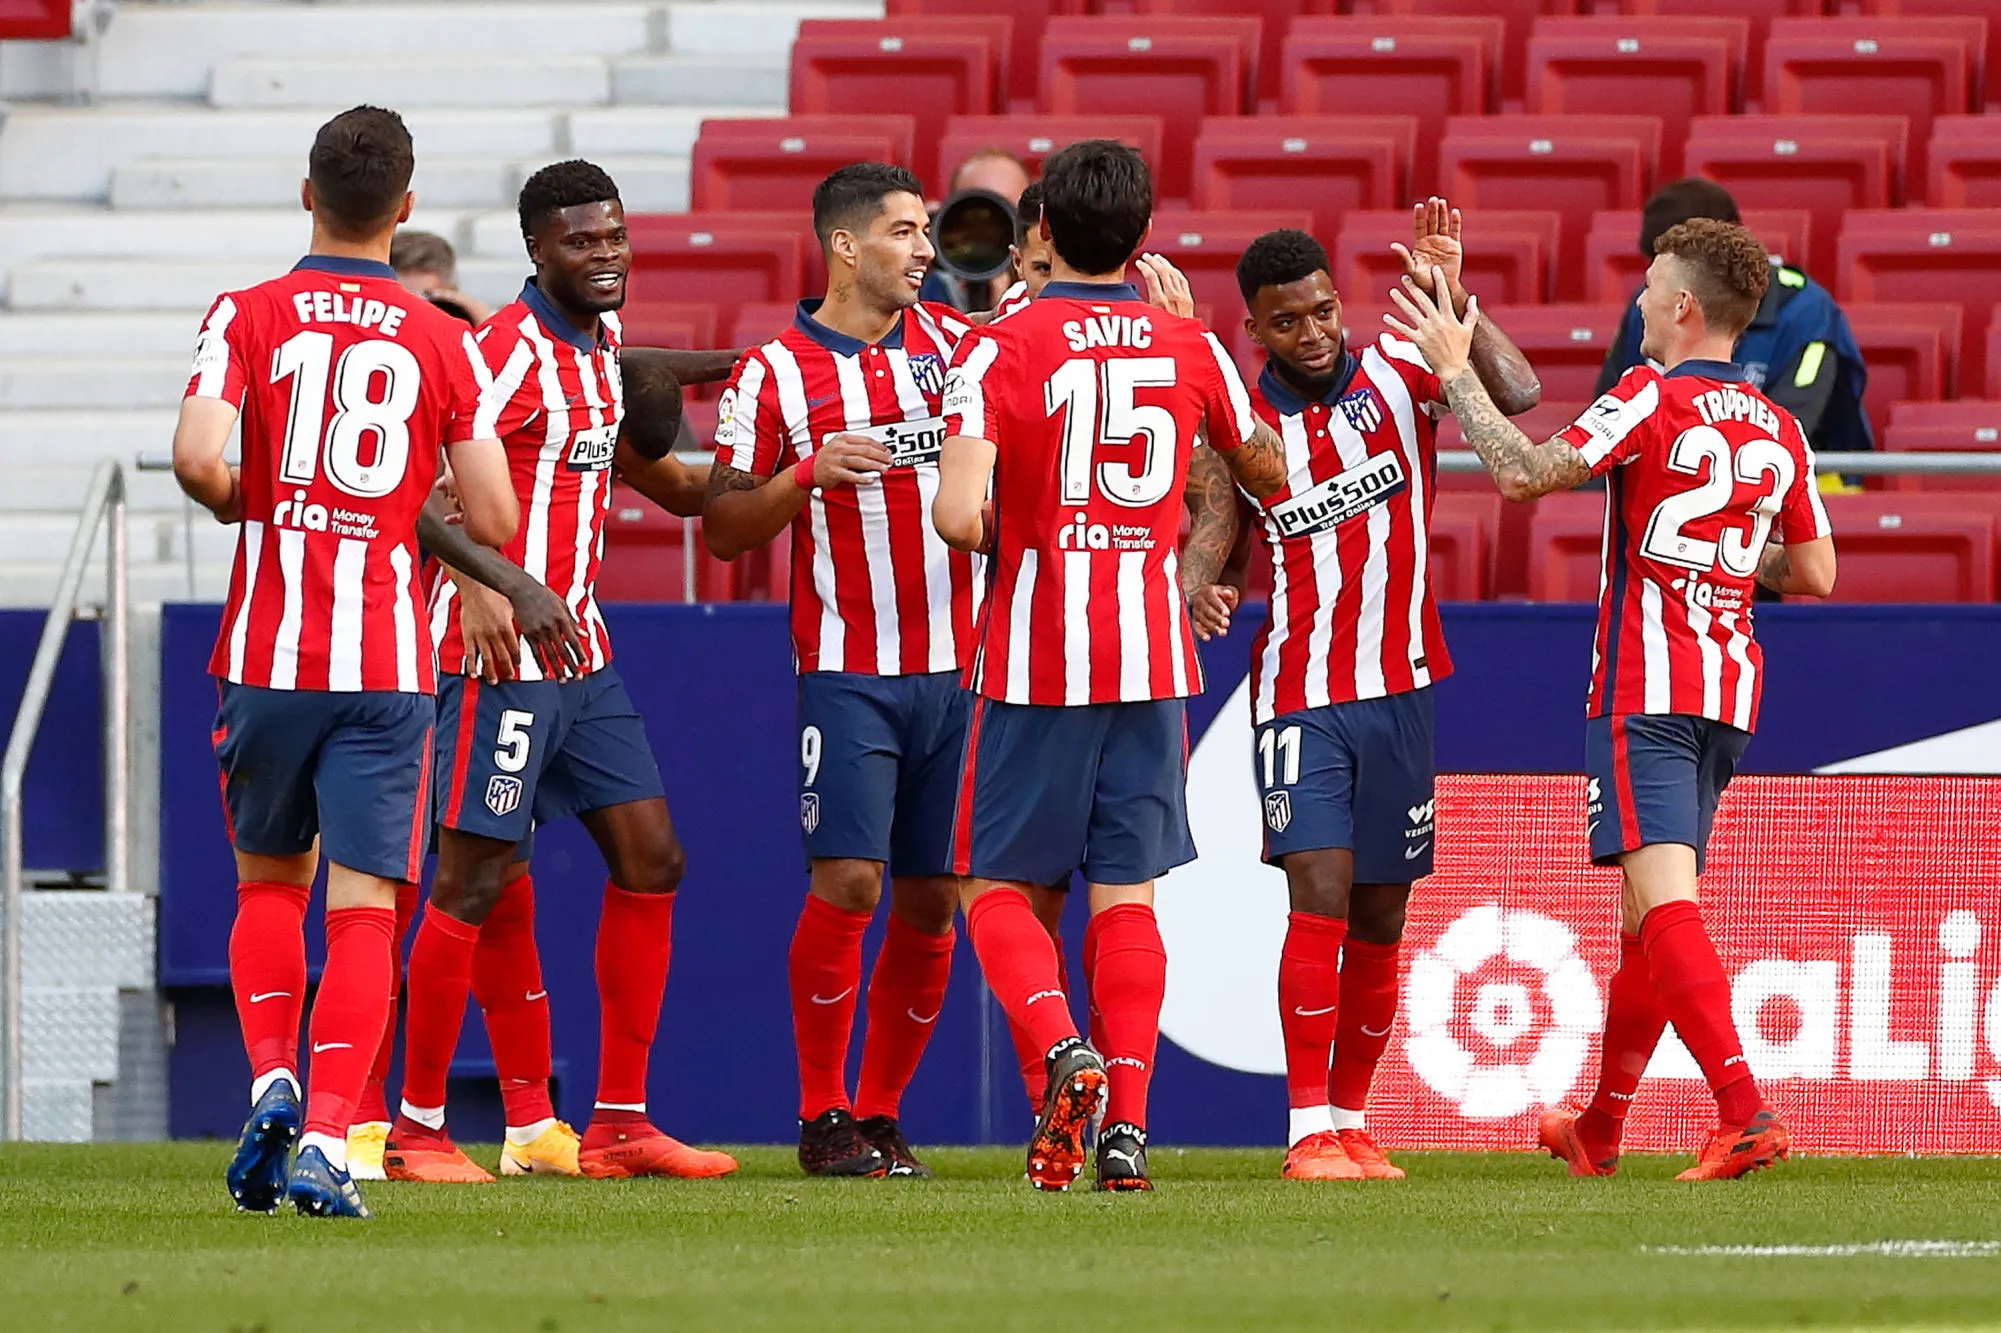 Pronostic Atlético Salzbourg : Analyse, prono et cotes doublées sur le match de Ligue des champions